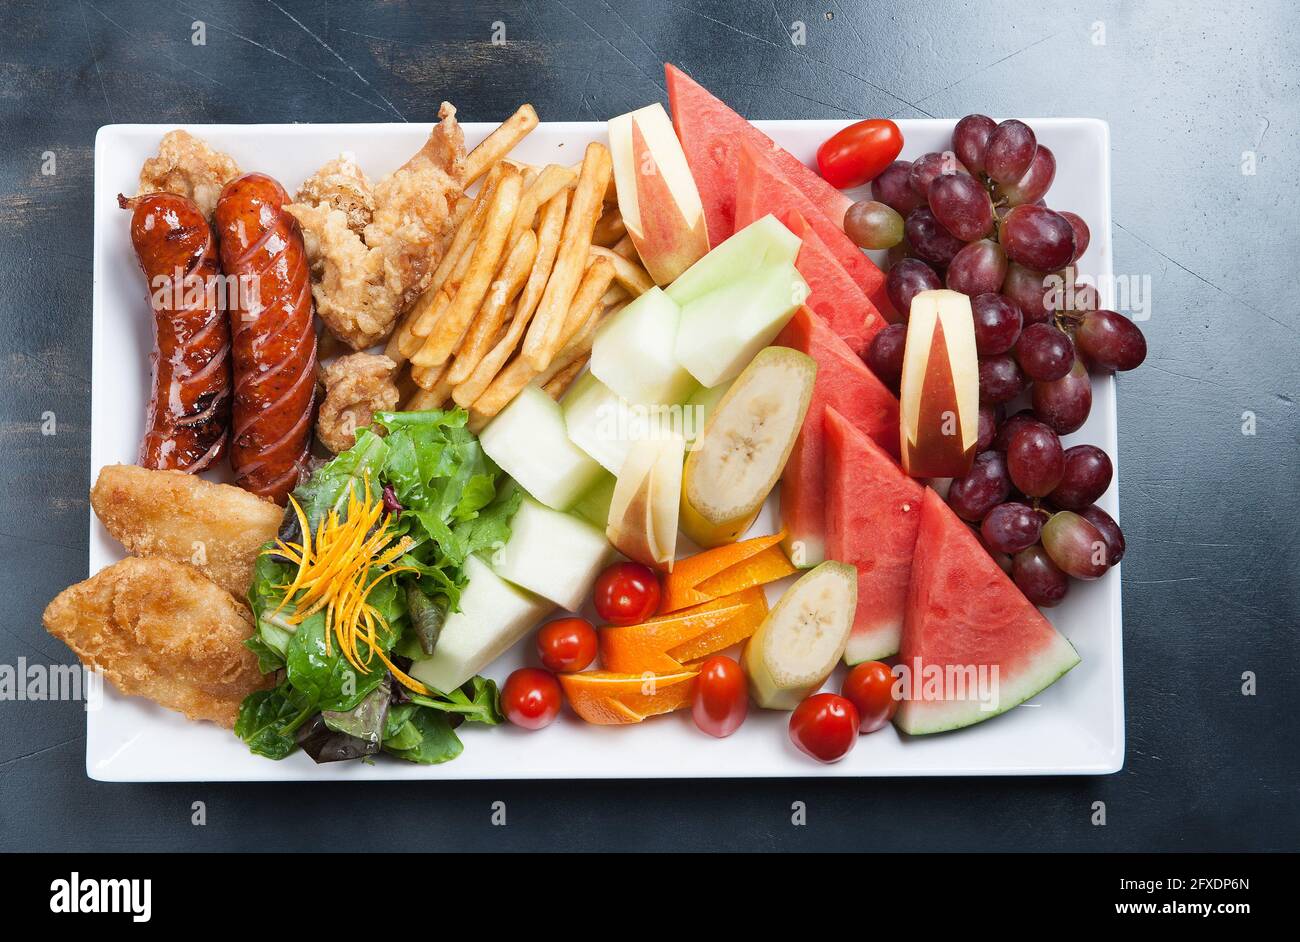 Assiette de plats asiatiques. Saucisse fumée, tempura, frites. Pastèque, raisins et salade. Banque D'Images